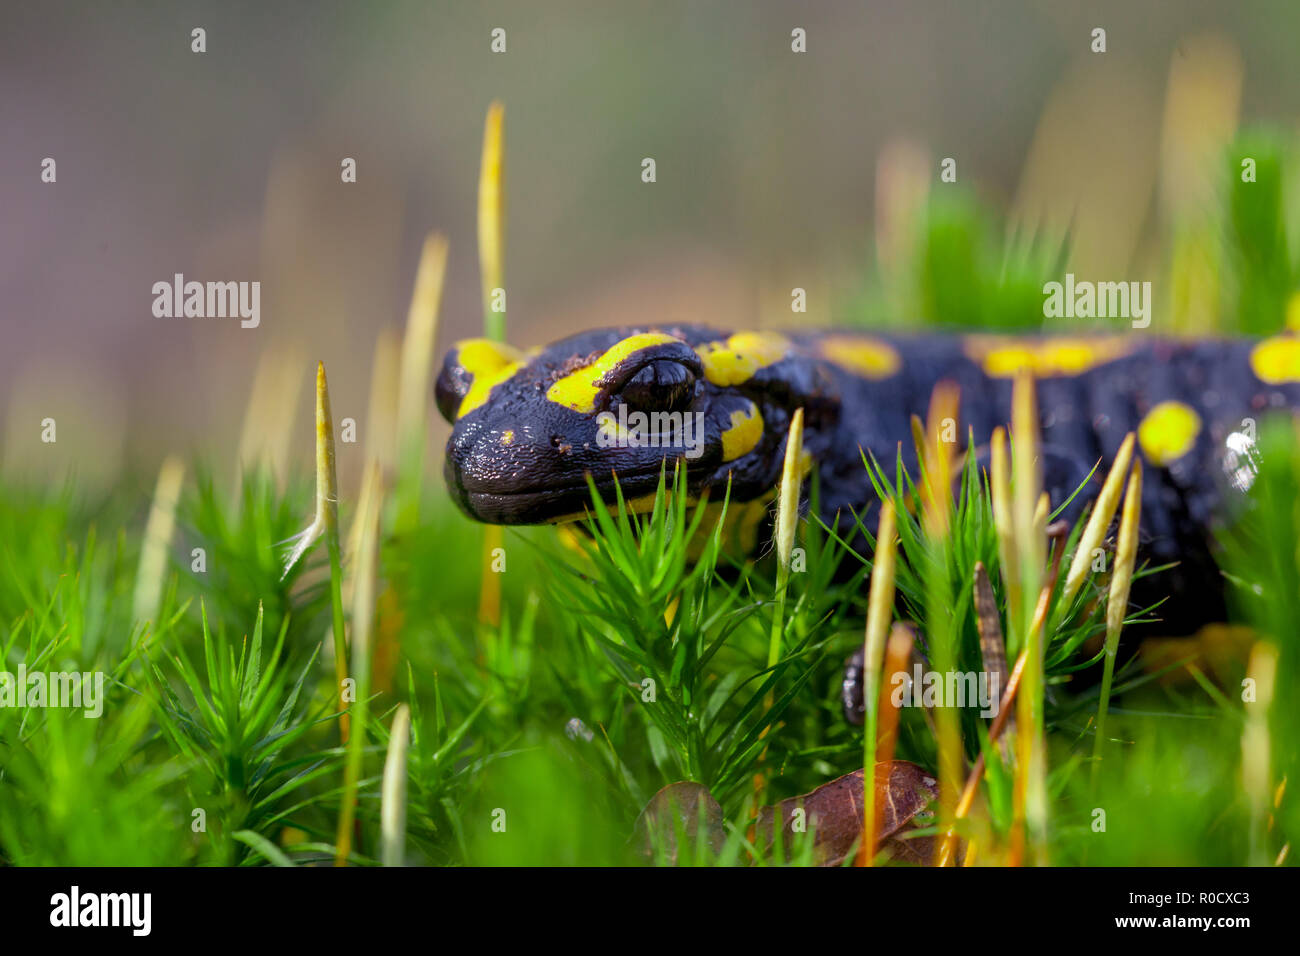 Les salamandres de feu (Salamandre Salamandre) vit dans les forêts de feuillus d'Europe centrale et sont plus fréquentes dans les zones humides. Banque D'Images